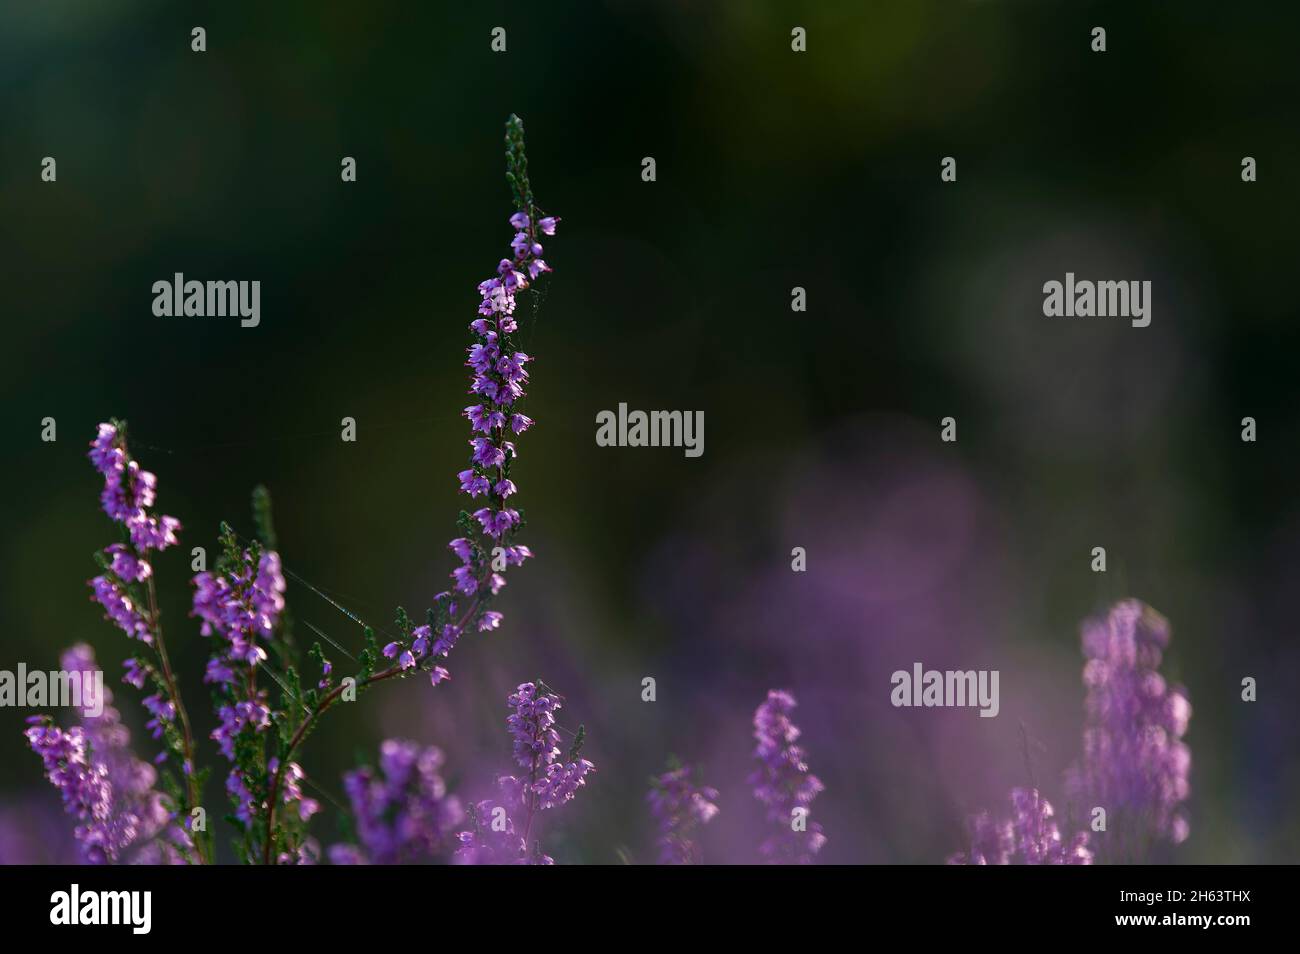 fleurs de bruyère commune (calluna vulgaris) brillent dans la lumière du matin, behringer heide, réserve naturelle près de behringen près de bispingen, parc de santé de lüneburg, allemagne, basse-saxe Banque D'Images